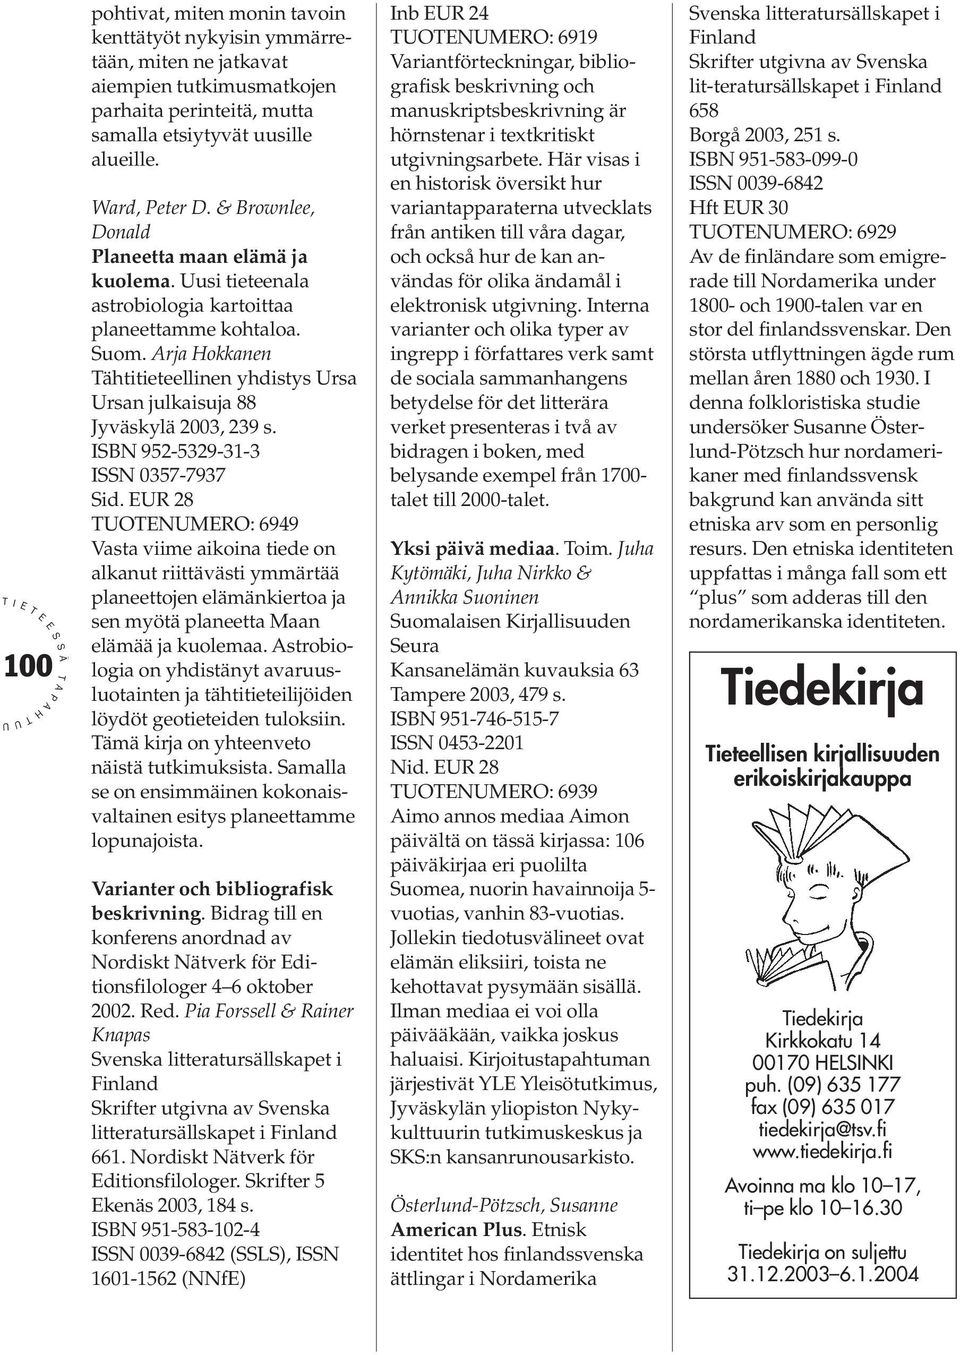 rja okkanen ähtitieteellinen yhdistys rsa rsan julkaisuja 88 Jyväskylä 2003, 239 s. BN 952-5329-31-3 N 0357-7937 id.